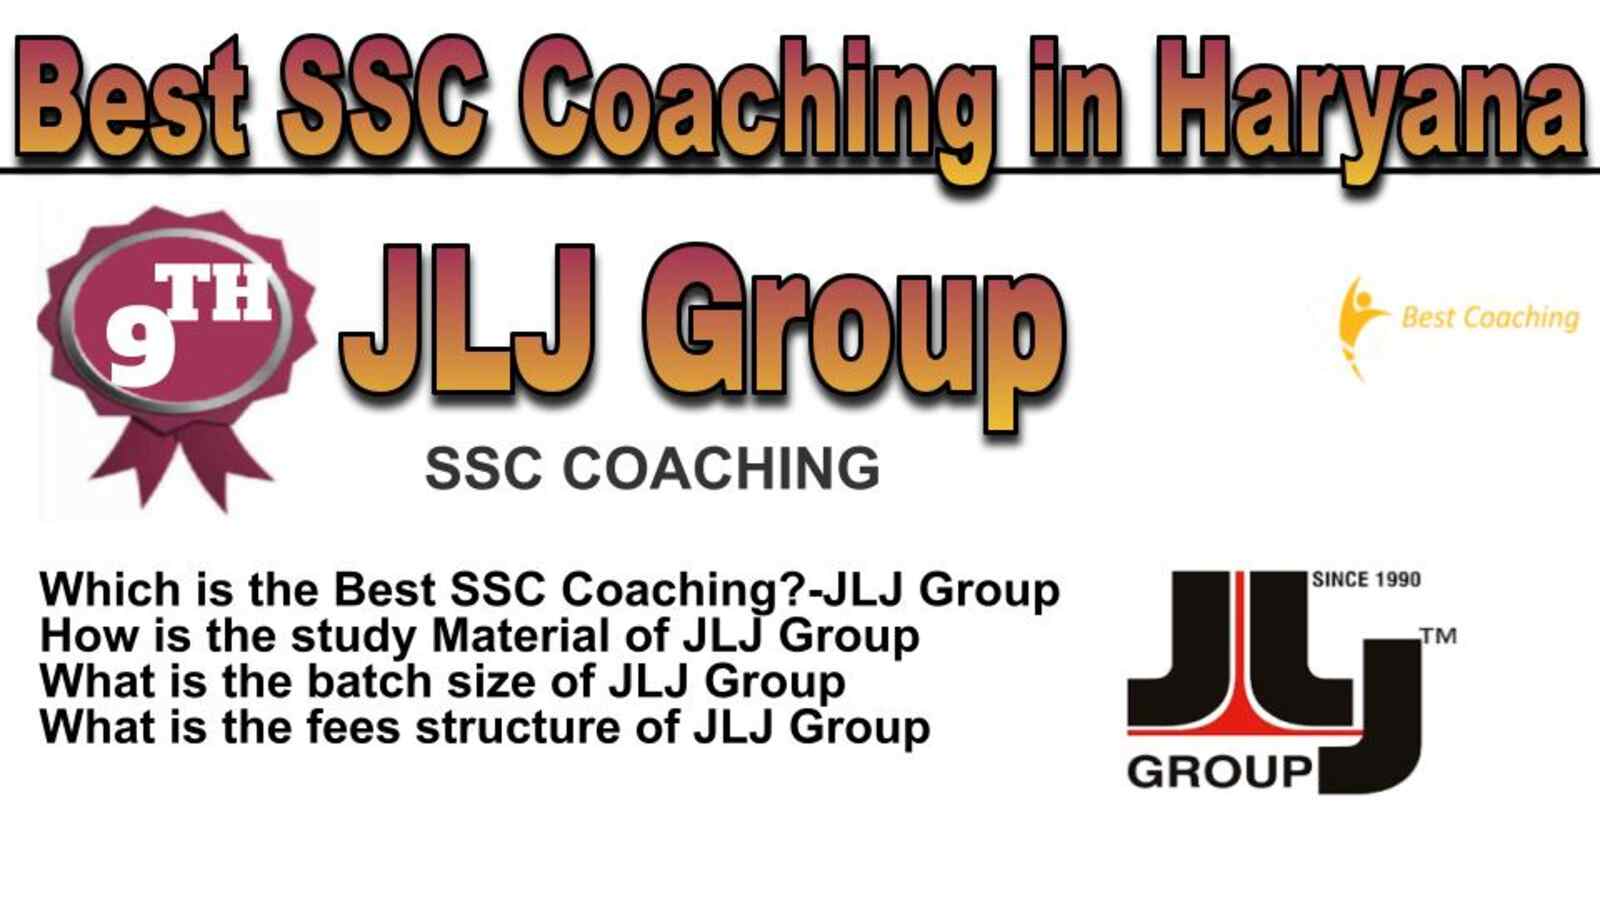 Rank 9 best SSC coaching in Haryana